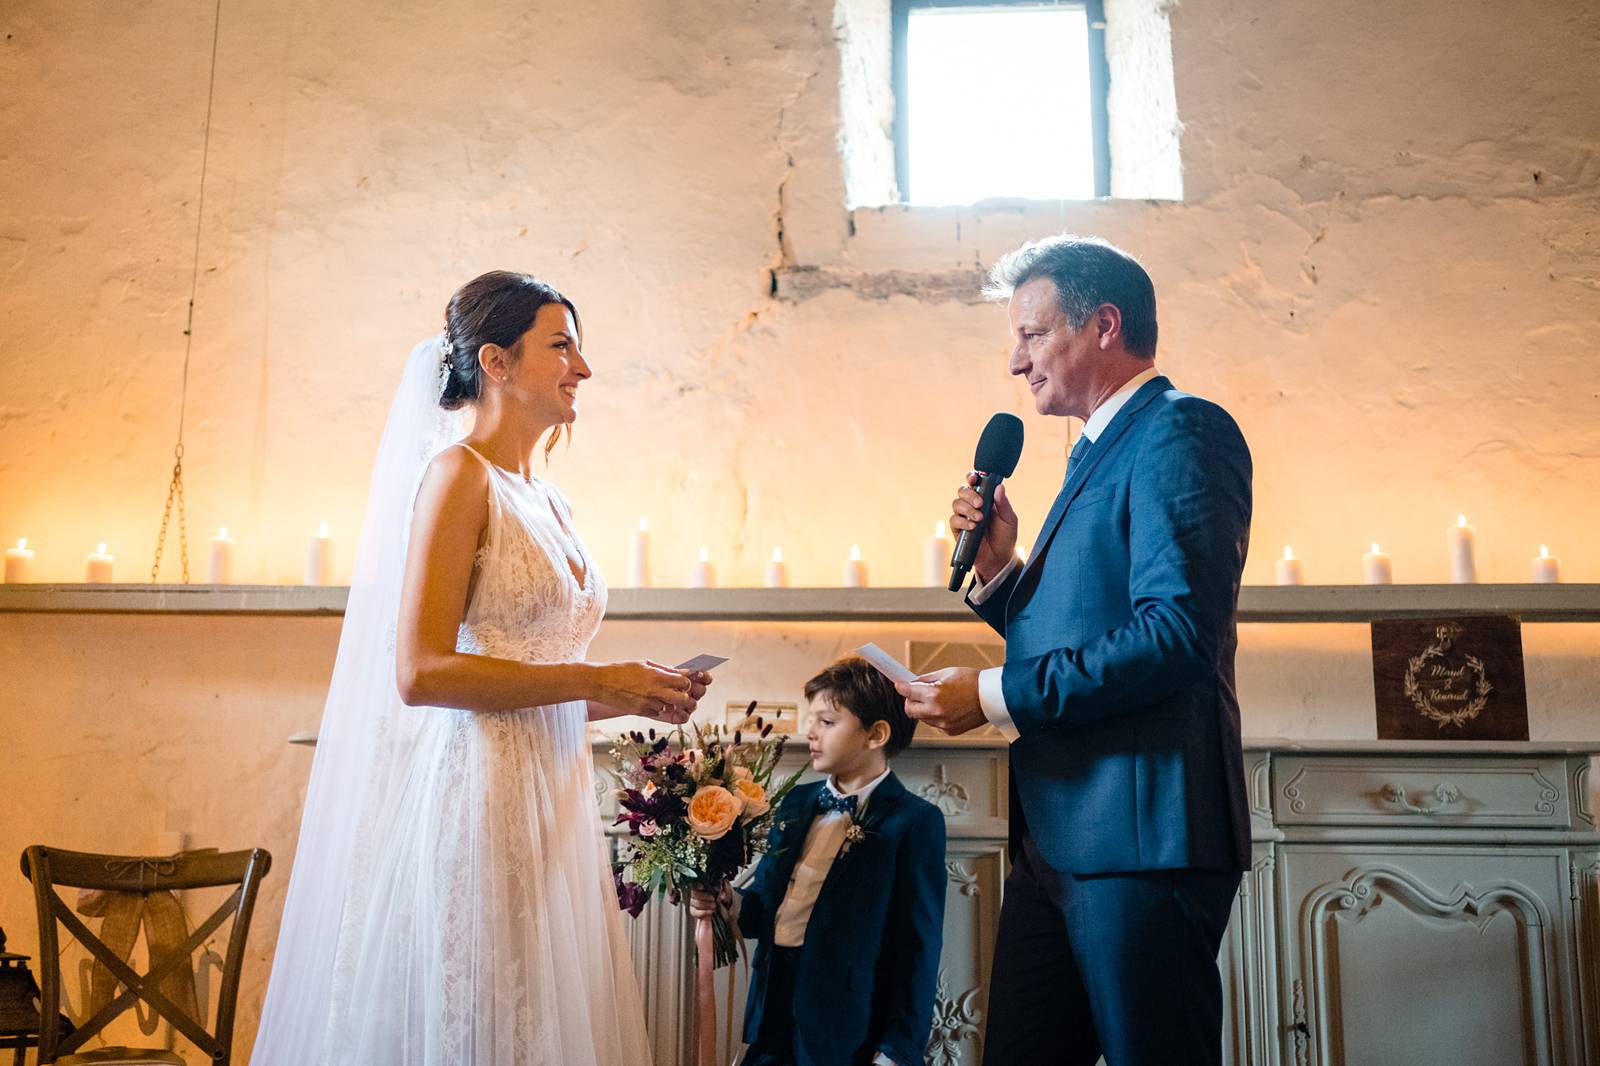 Le teaser du mariage de M+R au Château Rigaud en Gironde, avec une merveilleuse cérémonie laïque et une famille recomposée soudée.